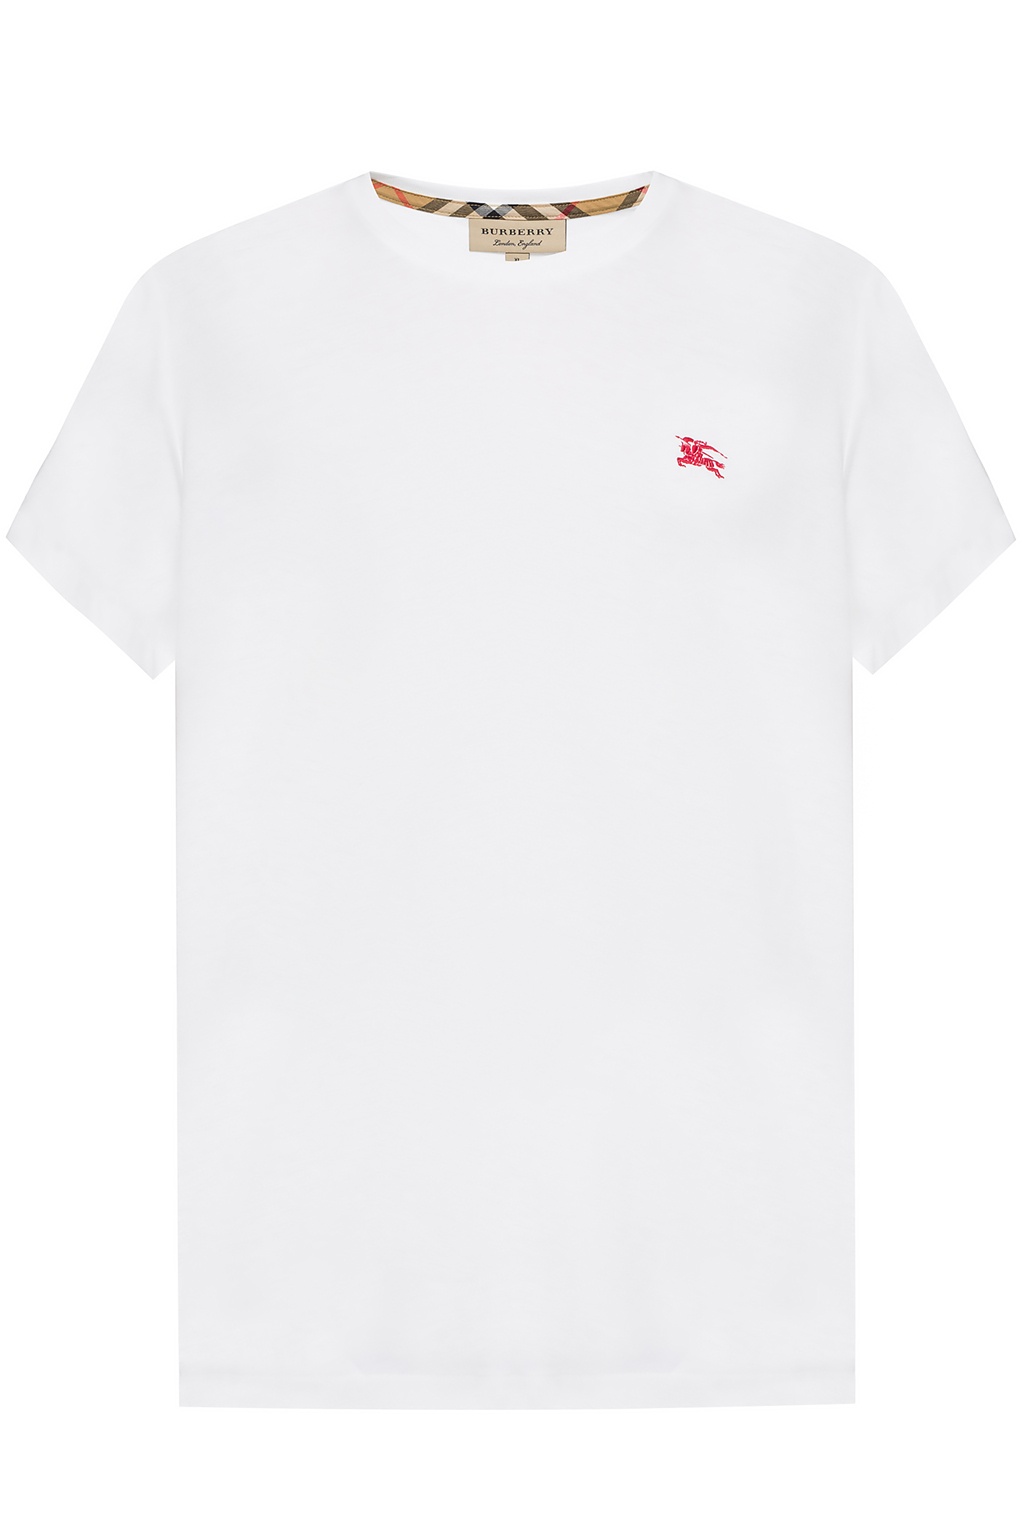 T-shirt - Vitkac HK